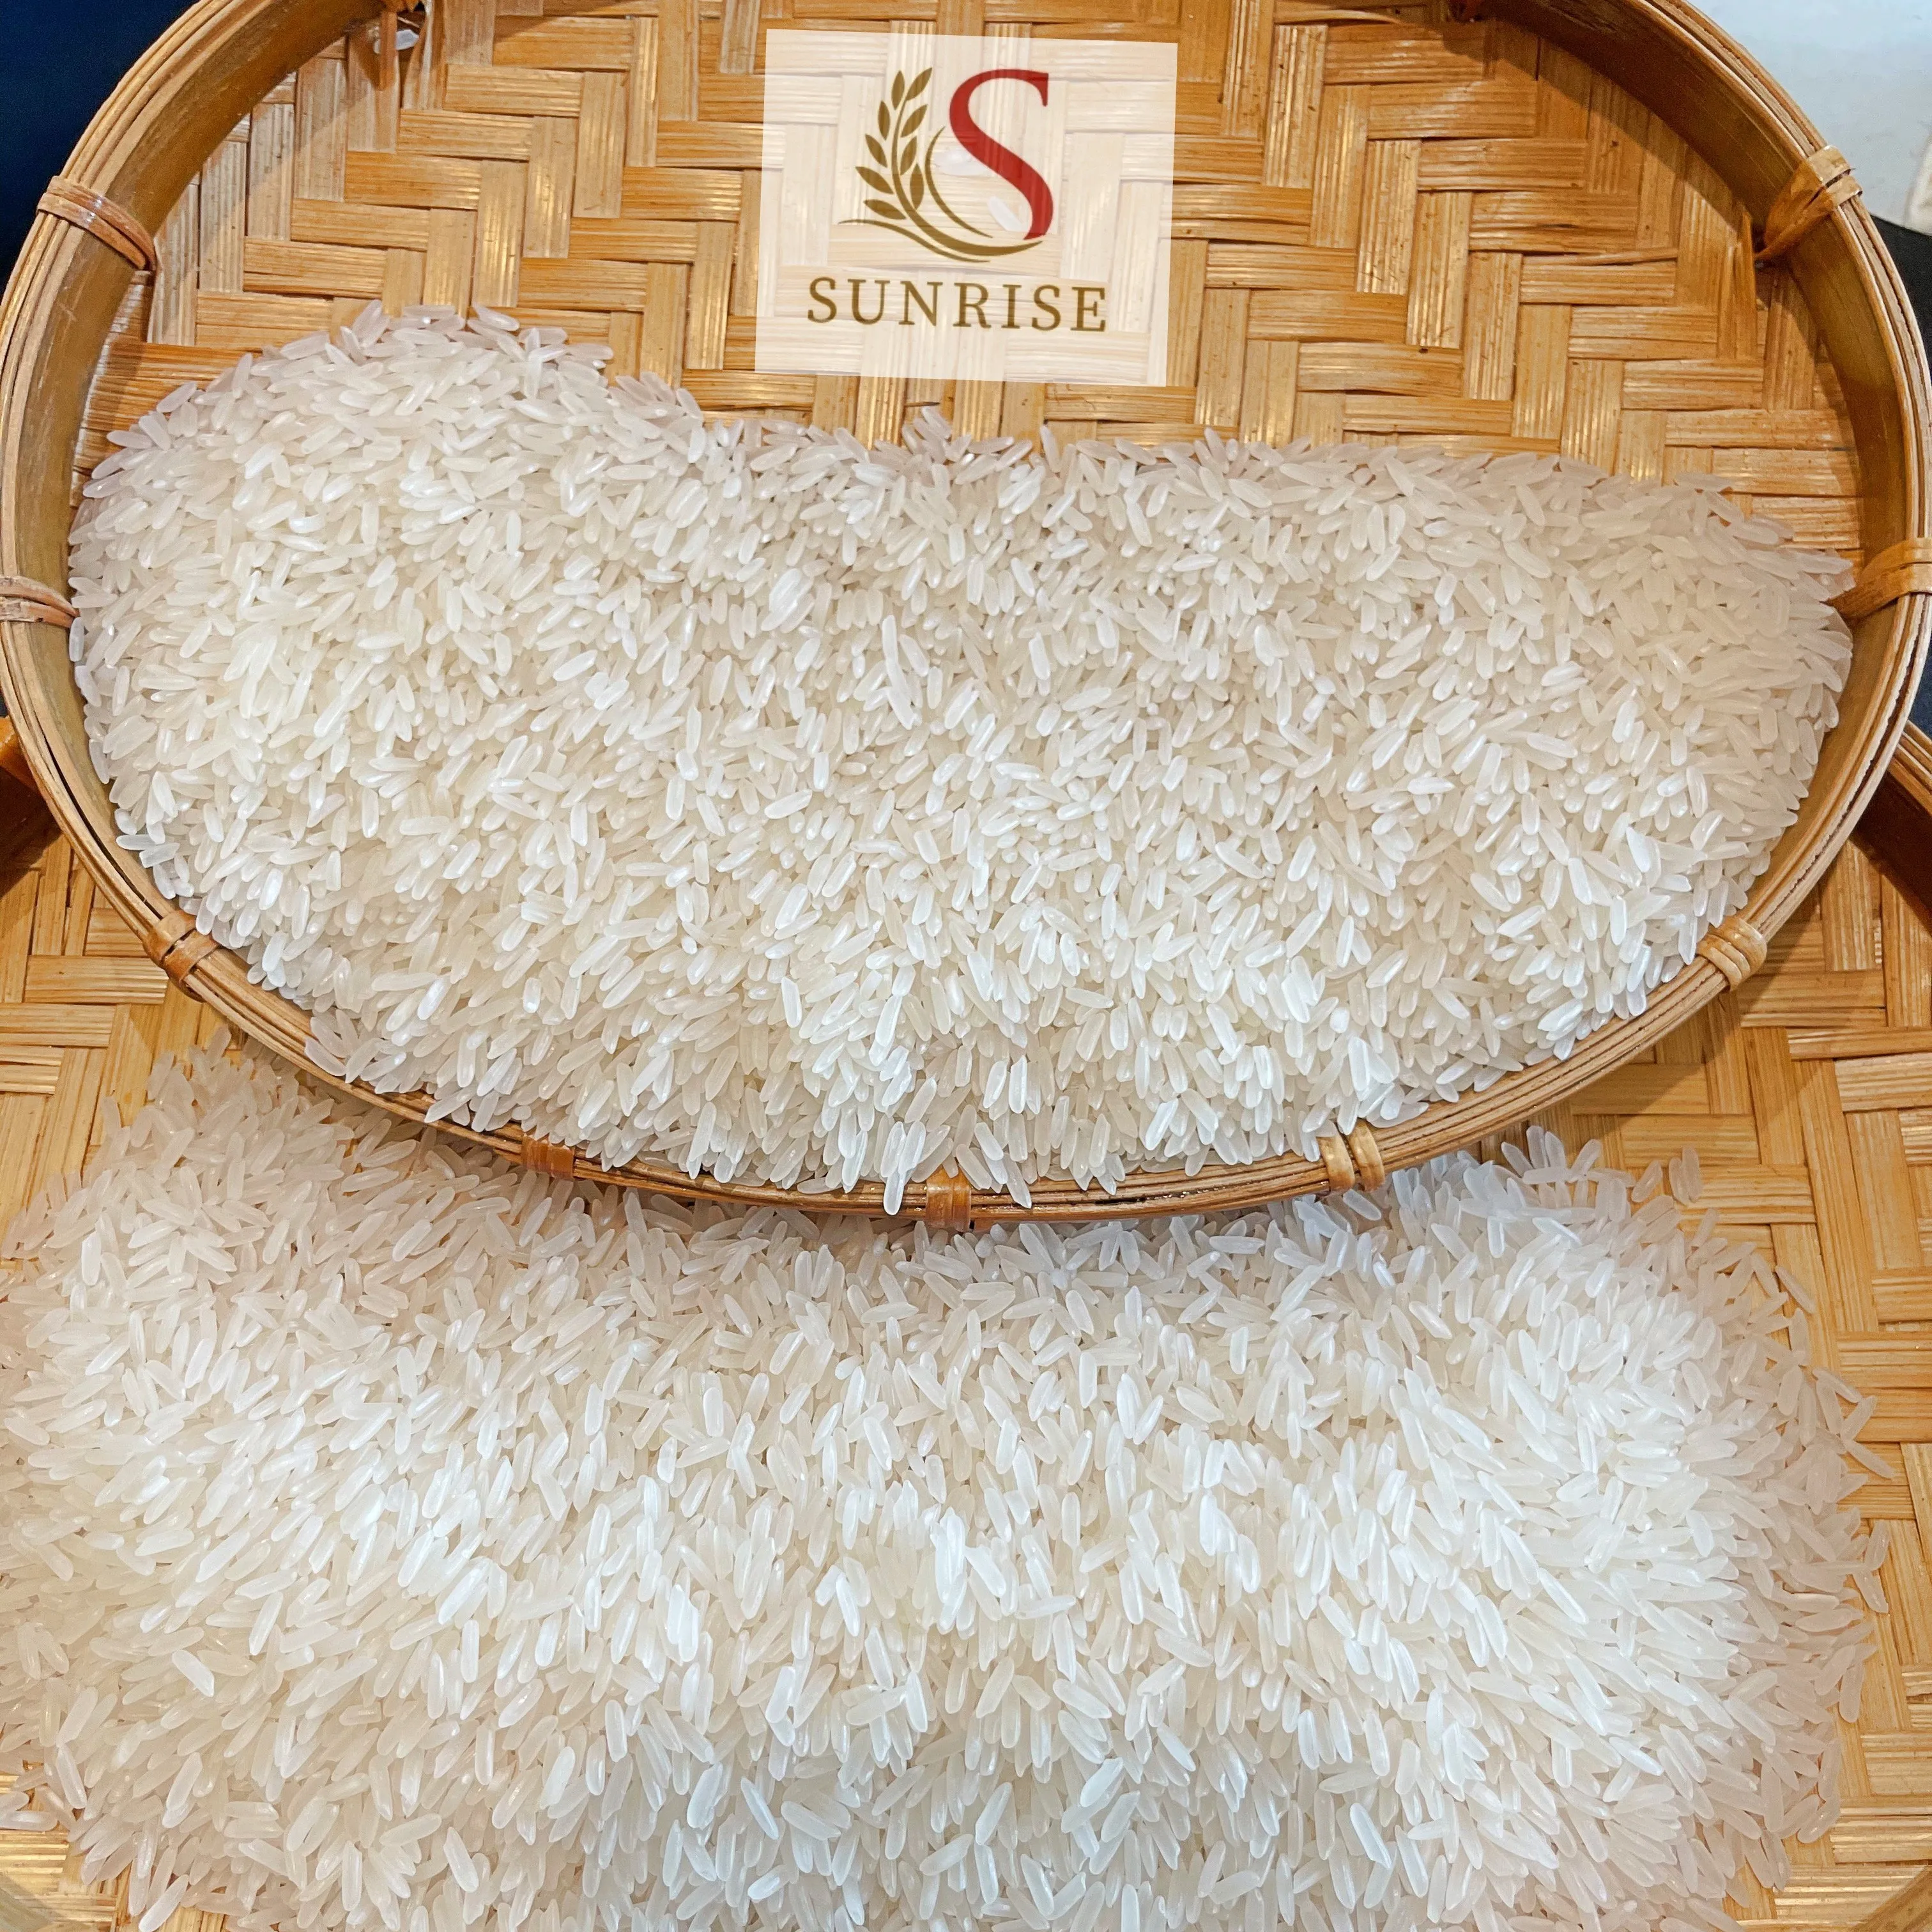 العطرية أرز ياسمين-الفيتنامية أعلى تصدير طويلة مكاسب الأرز لينة الملمس العطرية أرز ياسمين الحبوب (+ 84986778999 السيد ديفيد)